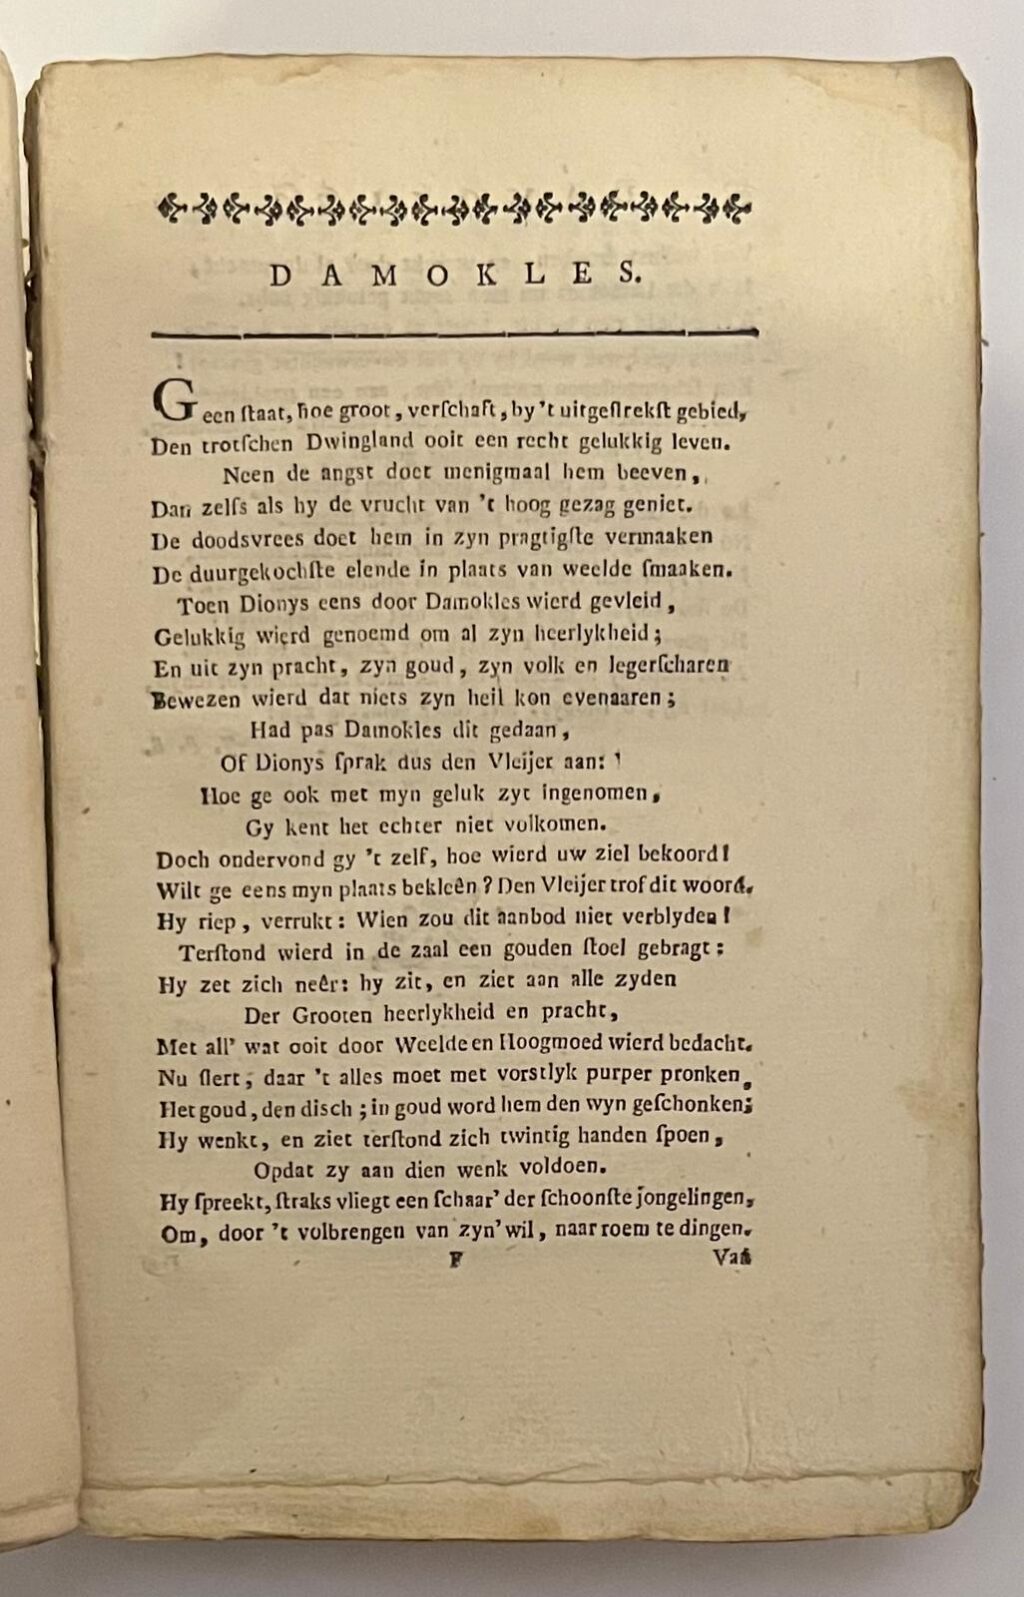 Fabelen. Utrecht, J. van Schoonhoven & Comp., 1775. [3 delen in 1 band met doorlopende paginering]